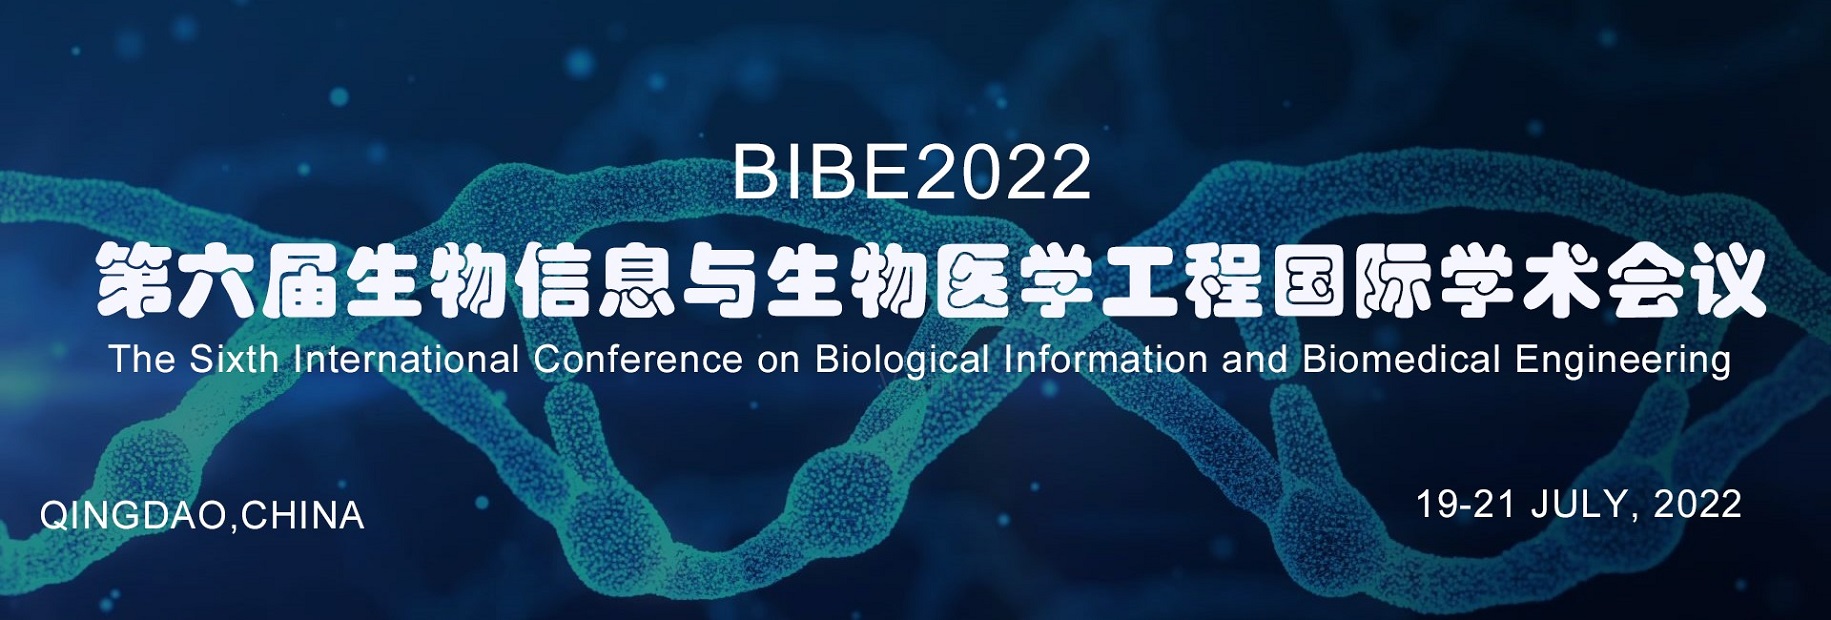 生物信息与生物医学工程国际学术会议